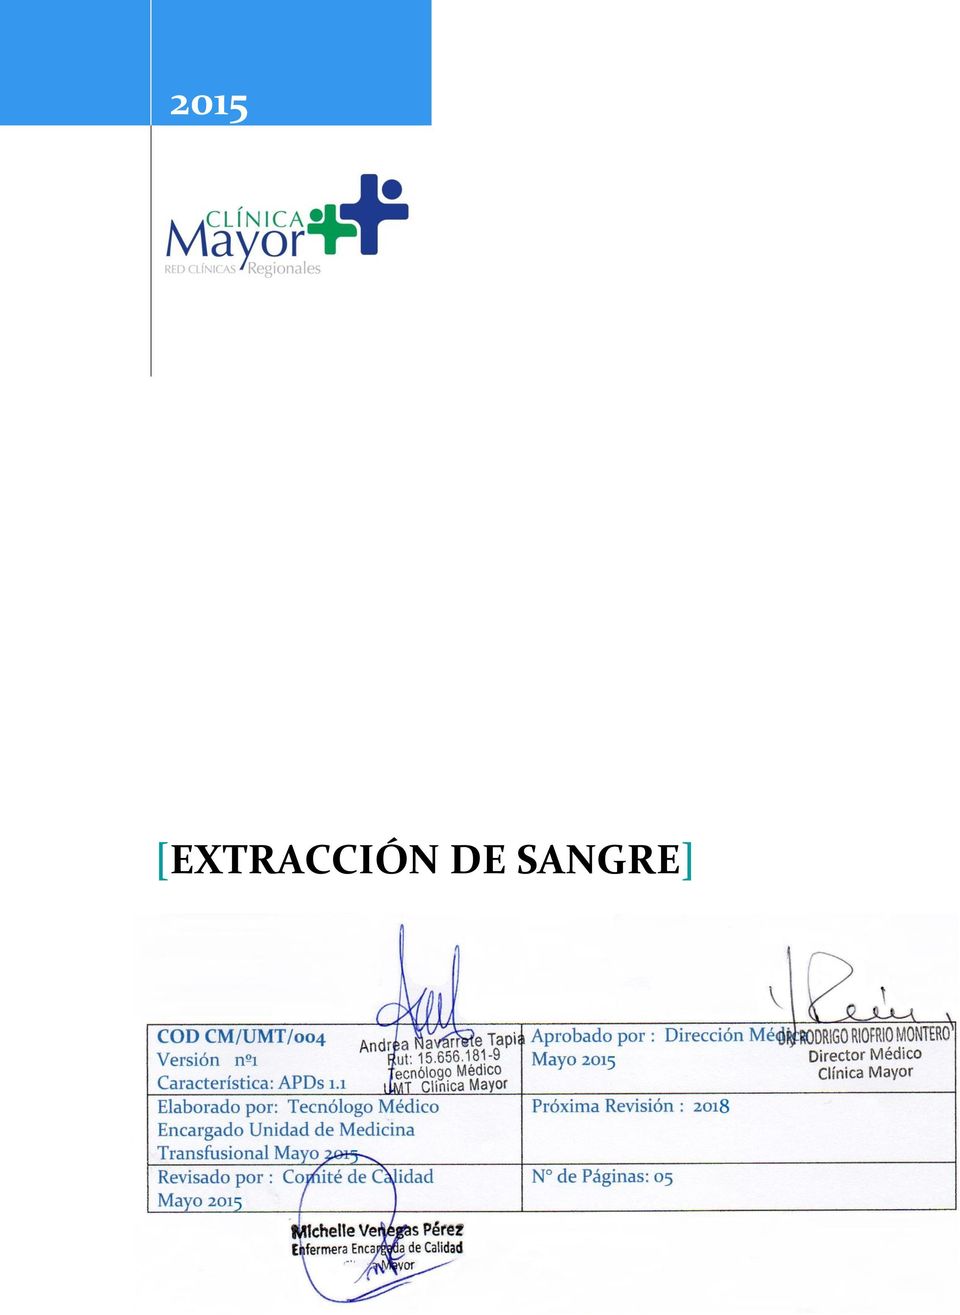 Transfusional Mayo 2015 Revisado por : Comité de Calidad Mayo 2015